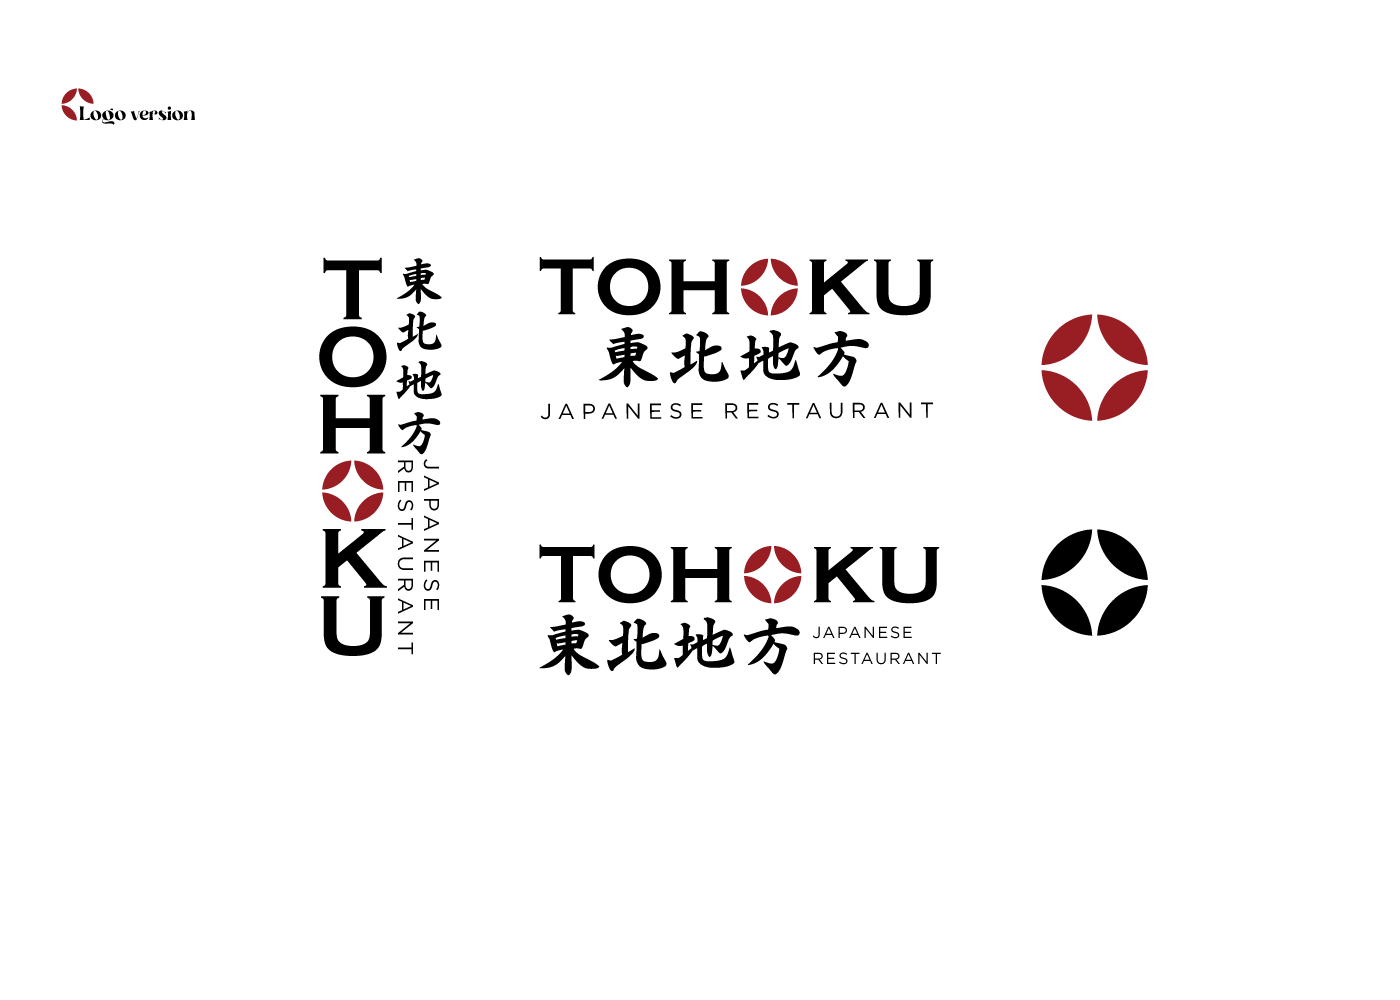 thiết kế nhận diện thương hiệu nhà hàng tohoku nghệ an